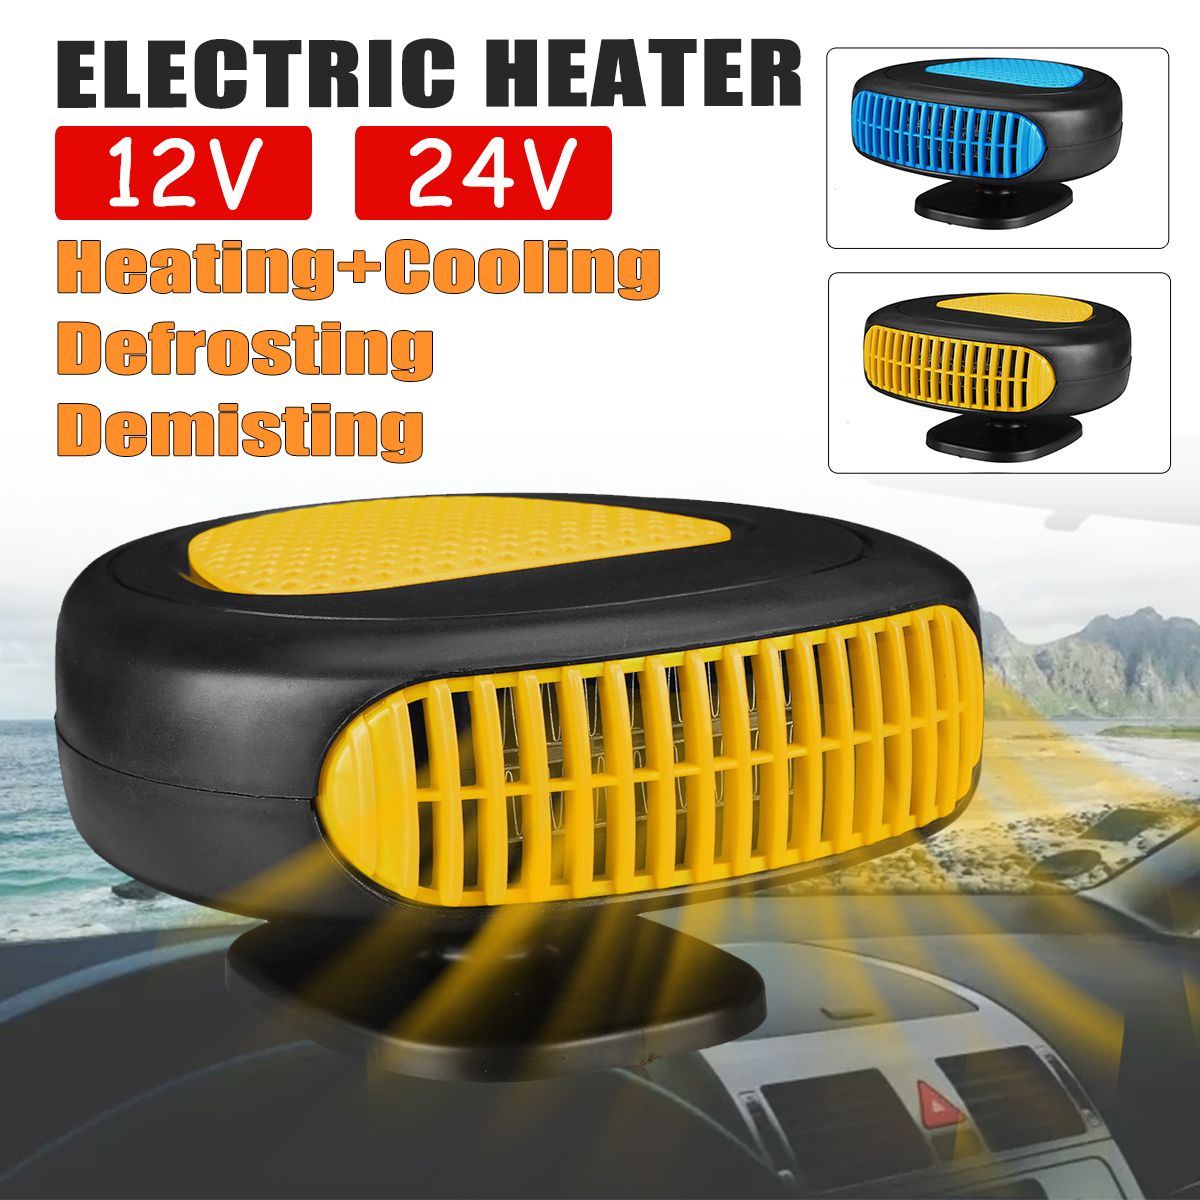 Portable-1224V-Electric-Car-Heater-DC-Heating-Fan-Defogger-Defroster-Demister-1763506